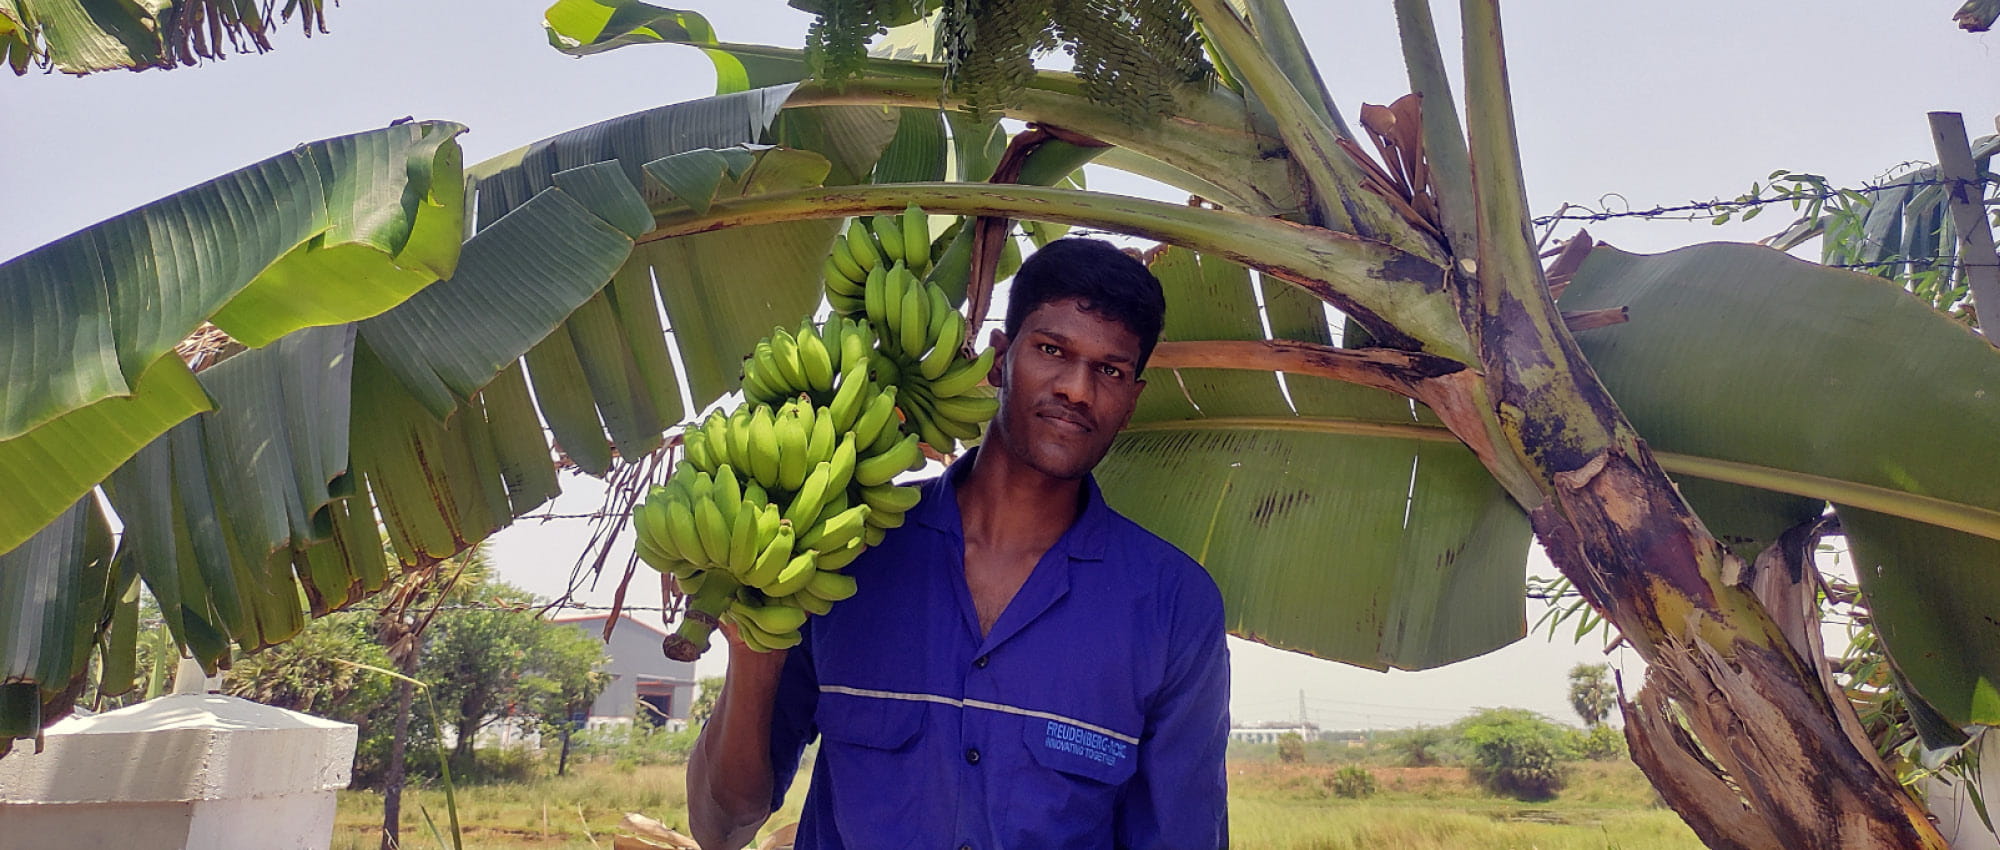 Ein Mann in blauem Shirt steht vor einer Bananenpflanze und hält eine Bananenstaude in der Hand. 